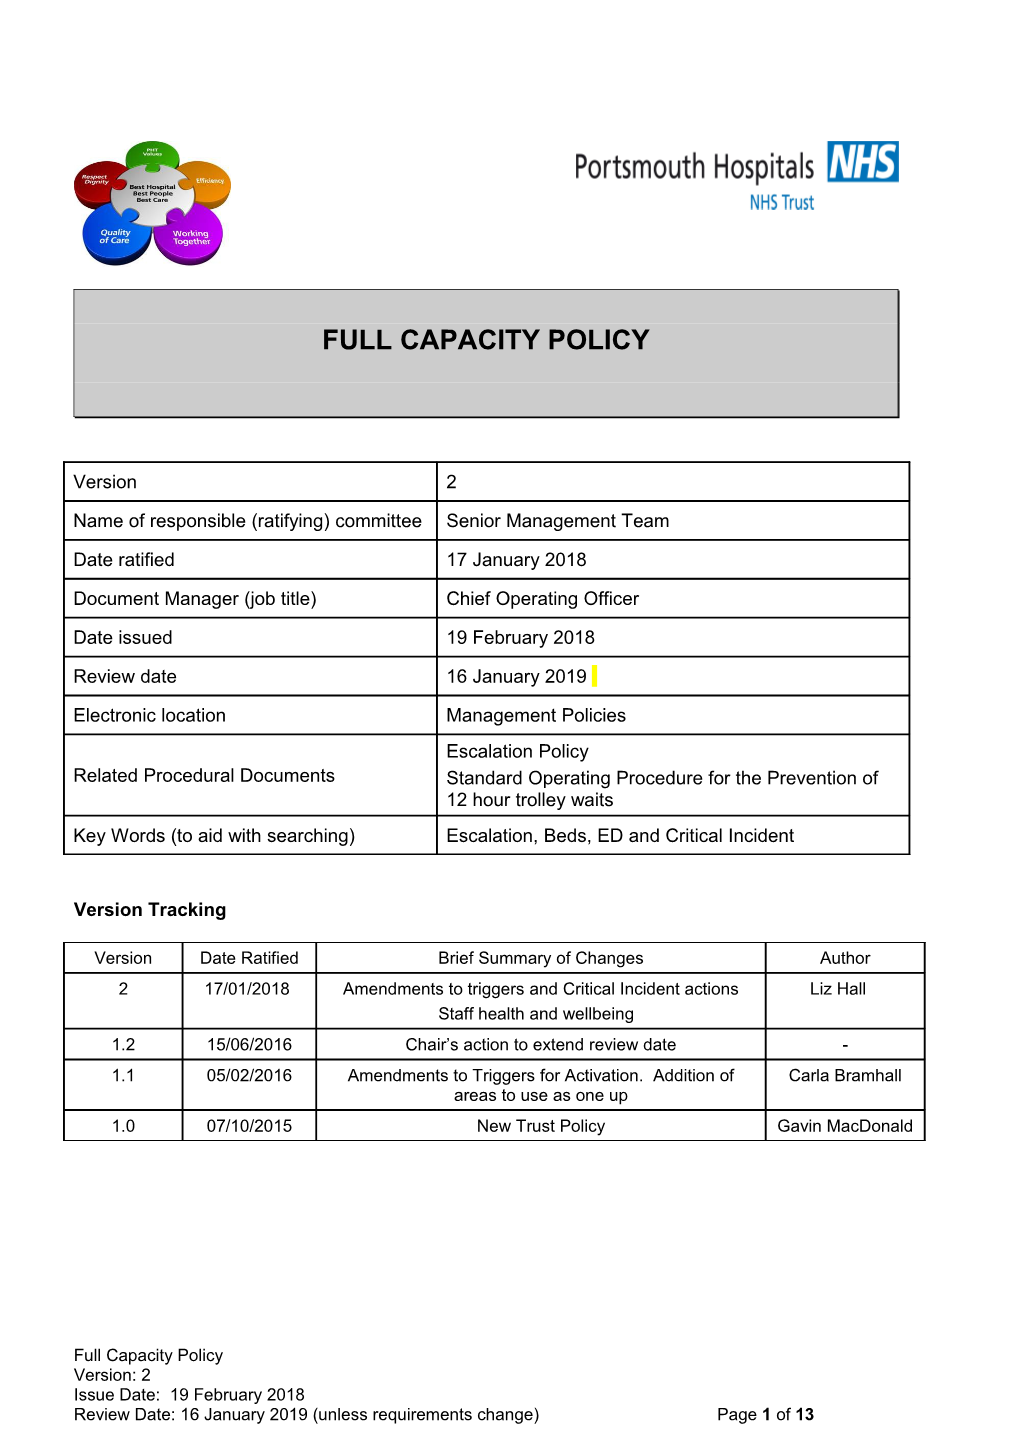 Full Capacity Policy